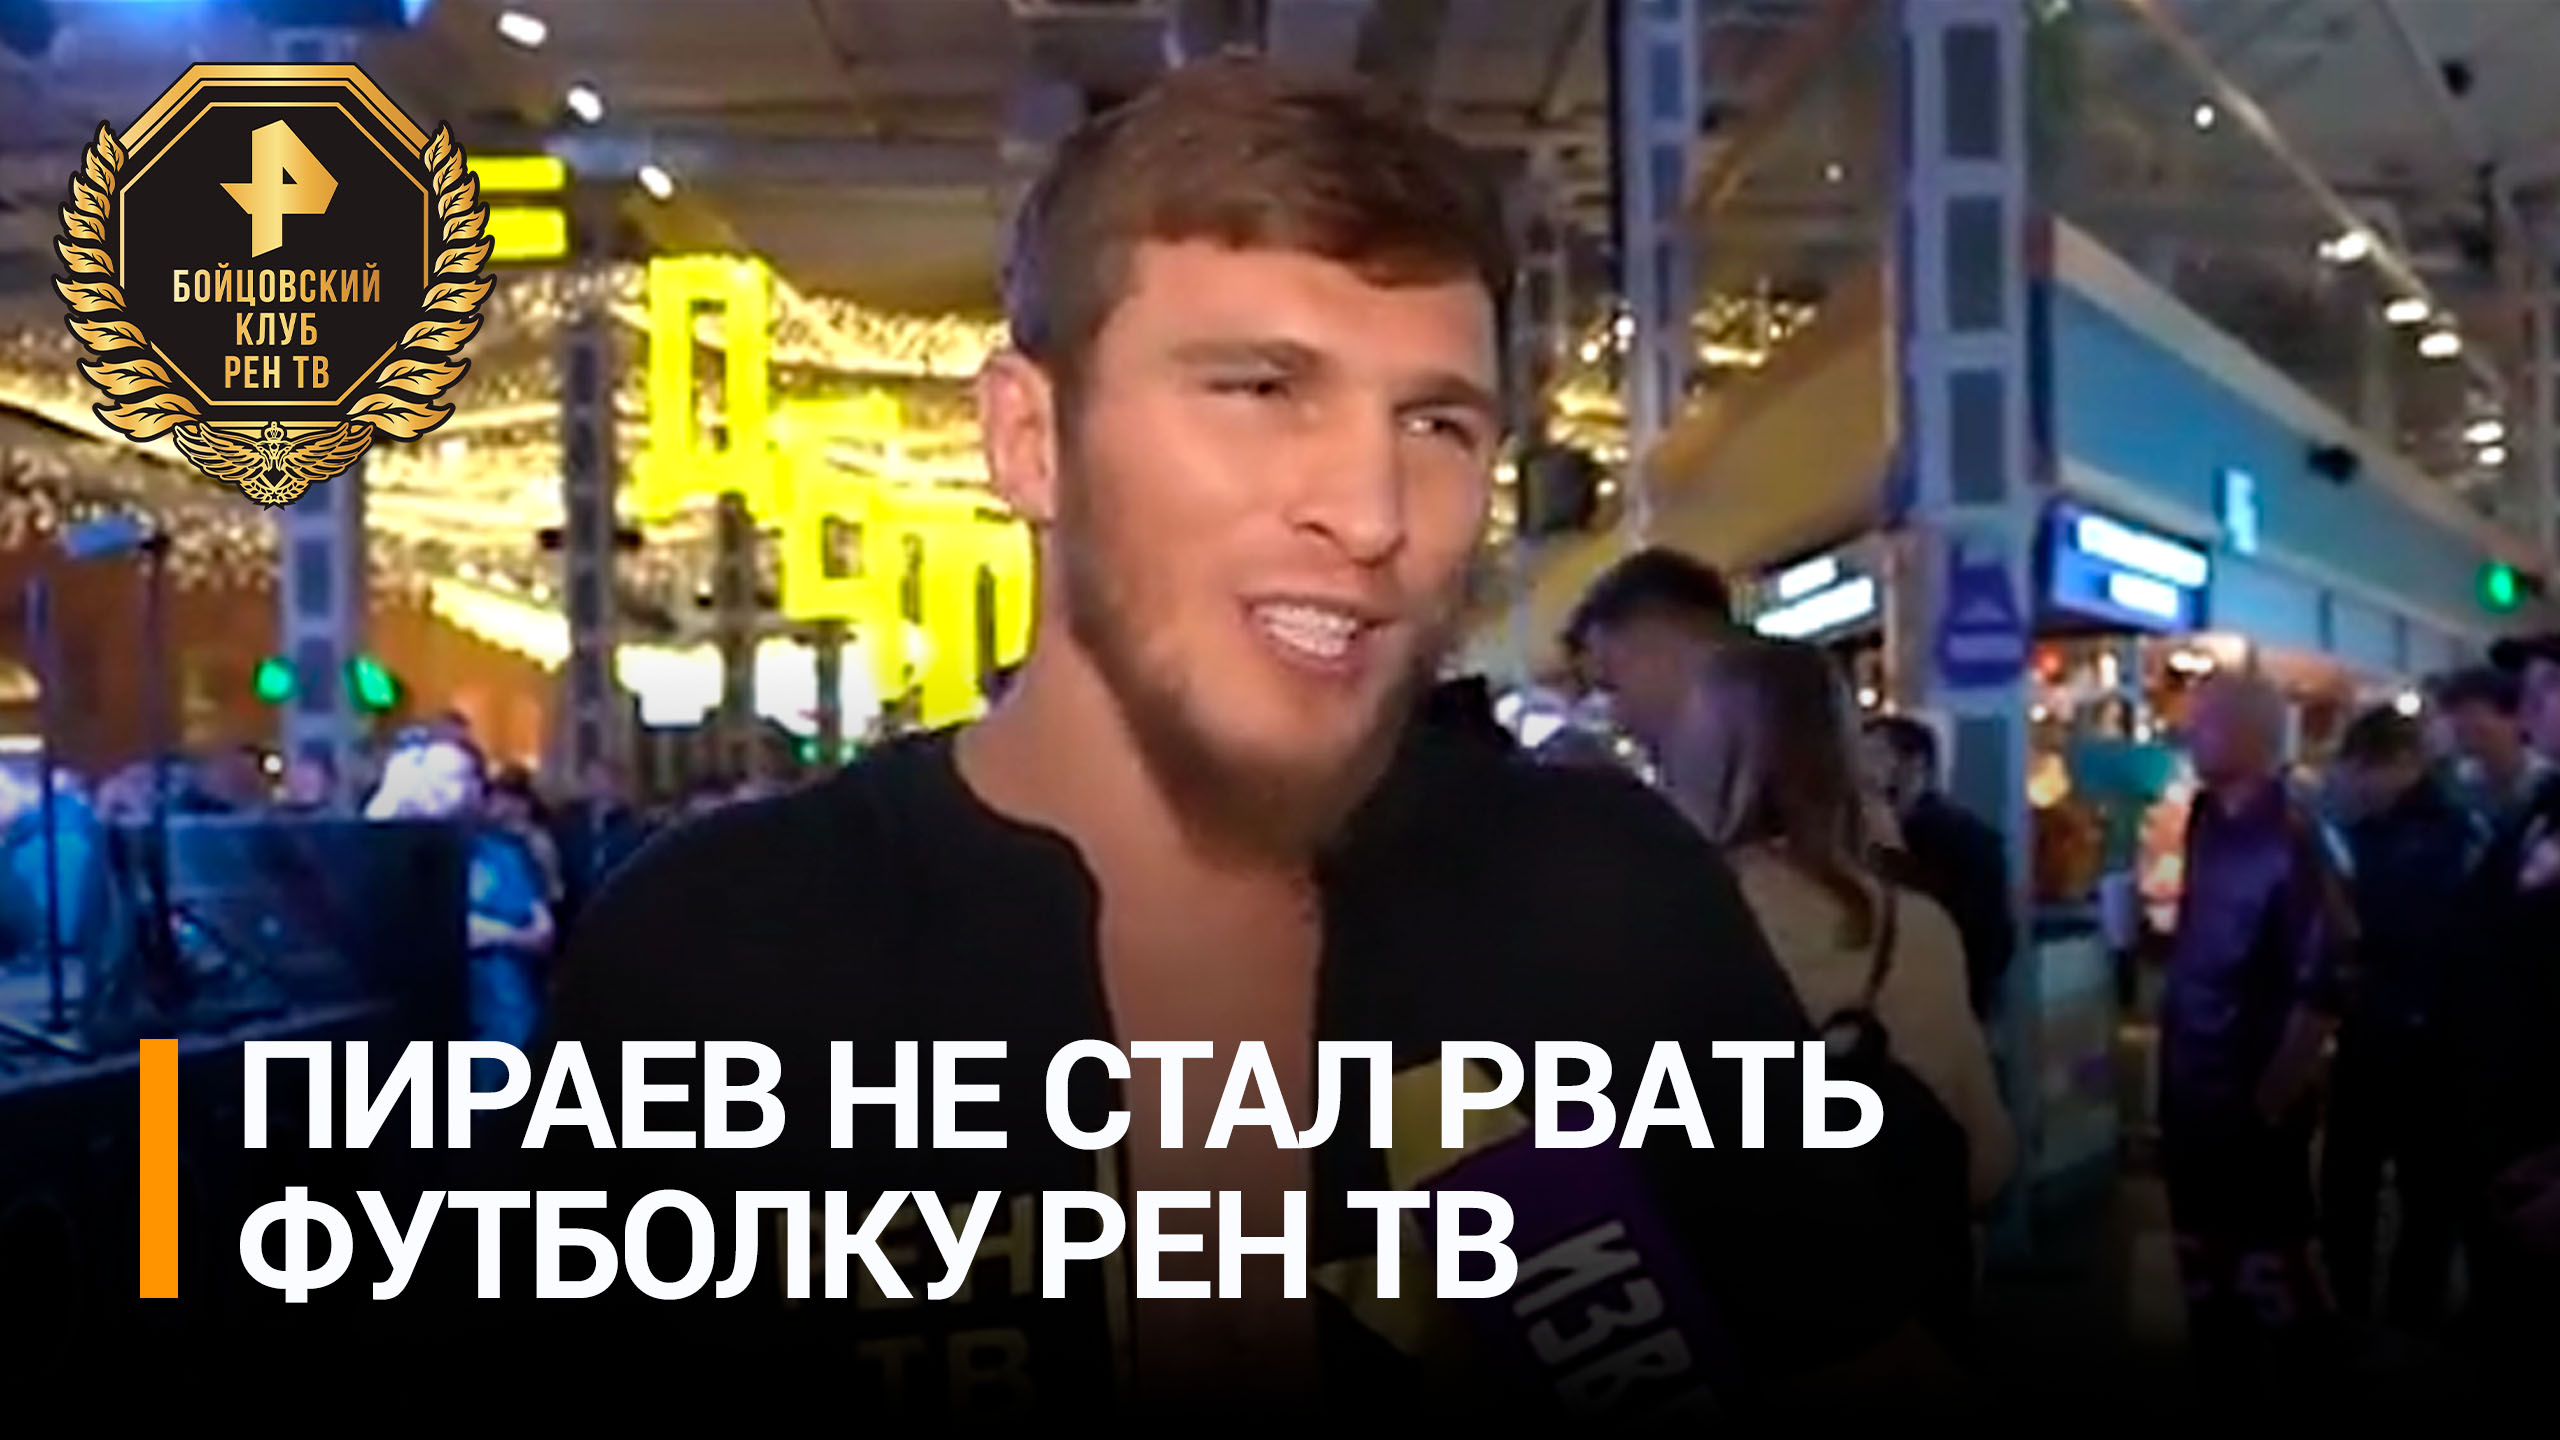 Пираев рассказал, почему он отказался рвать фирменную футболку РЕН ТВ на взвешивании